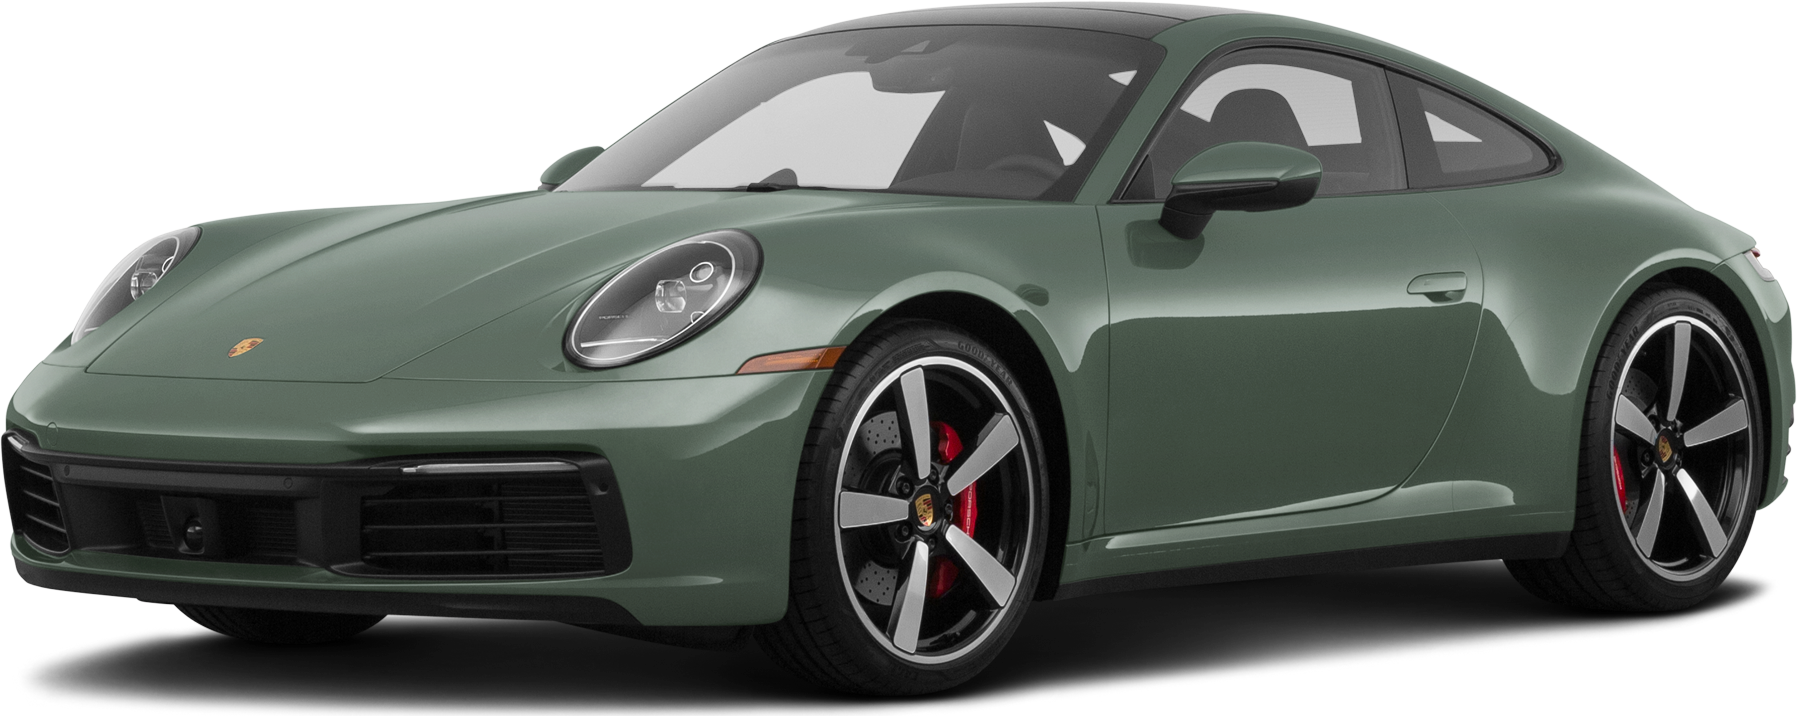 Porsche Personality - Porsche USA